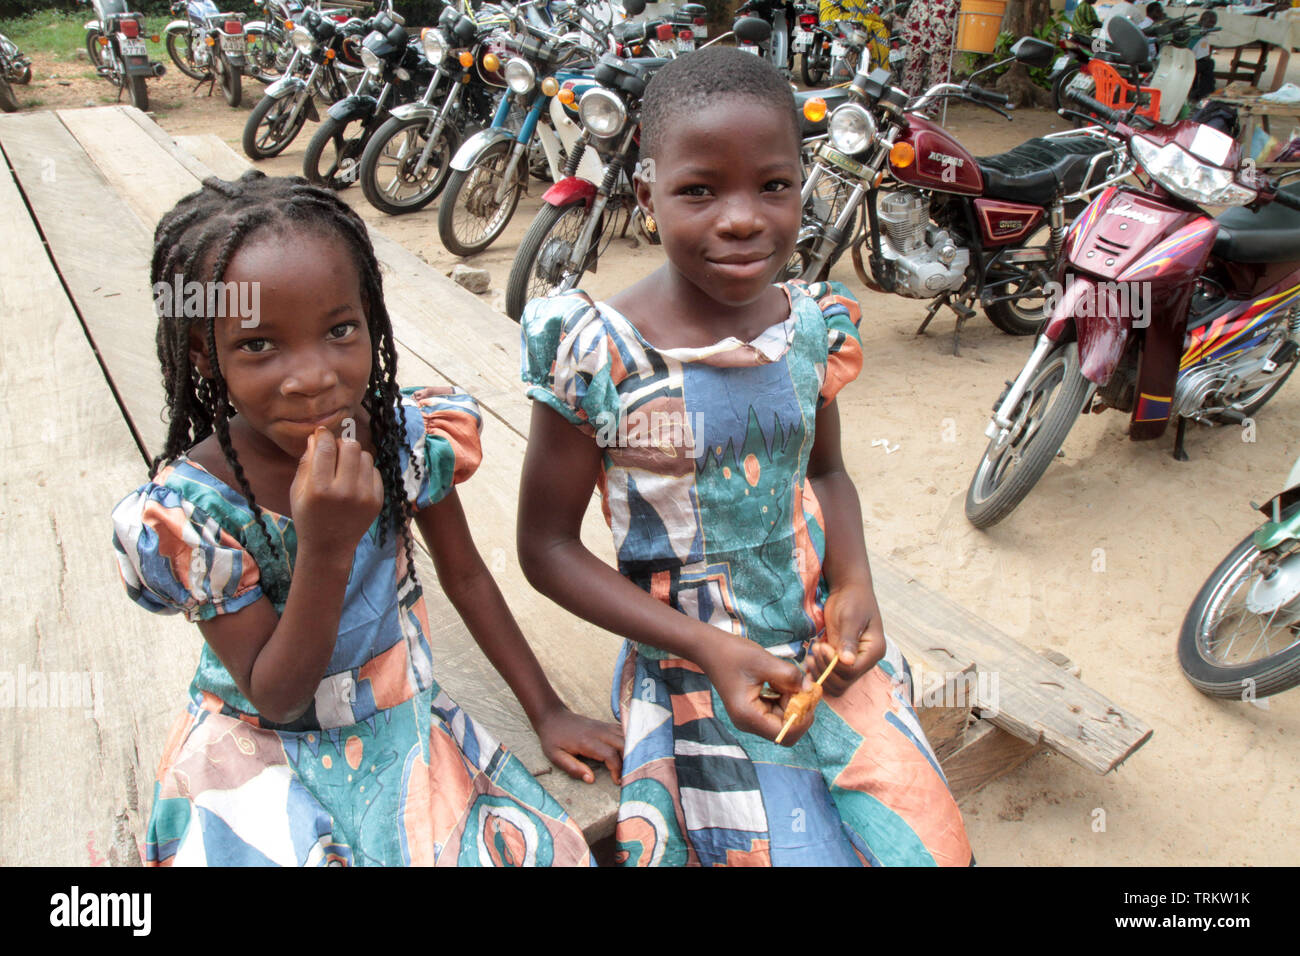 Jeunes filles togolaises allant à la messe. Lomé. Togo. Afrique de l'Ouest. Stock Photo